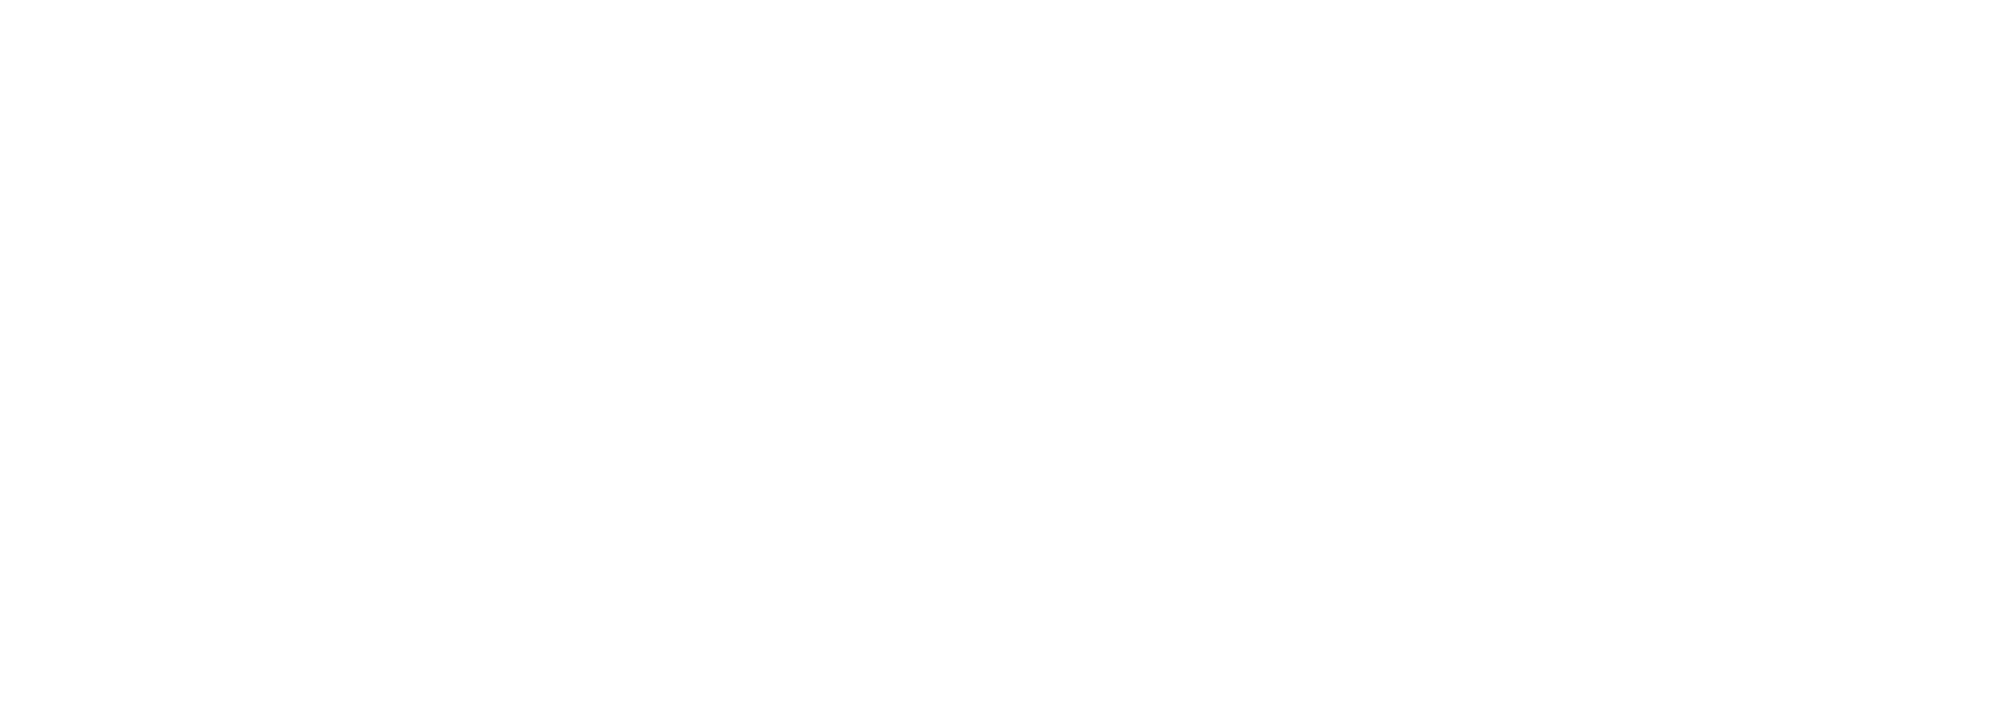 Vimond-symbol-name-white (2)